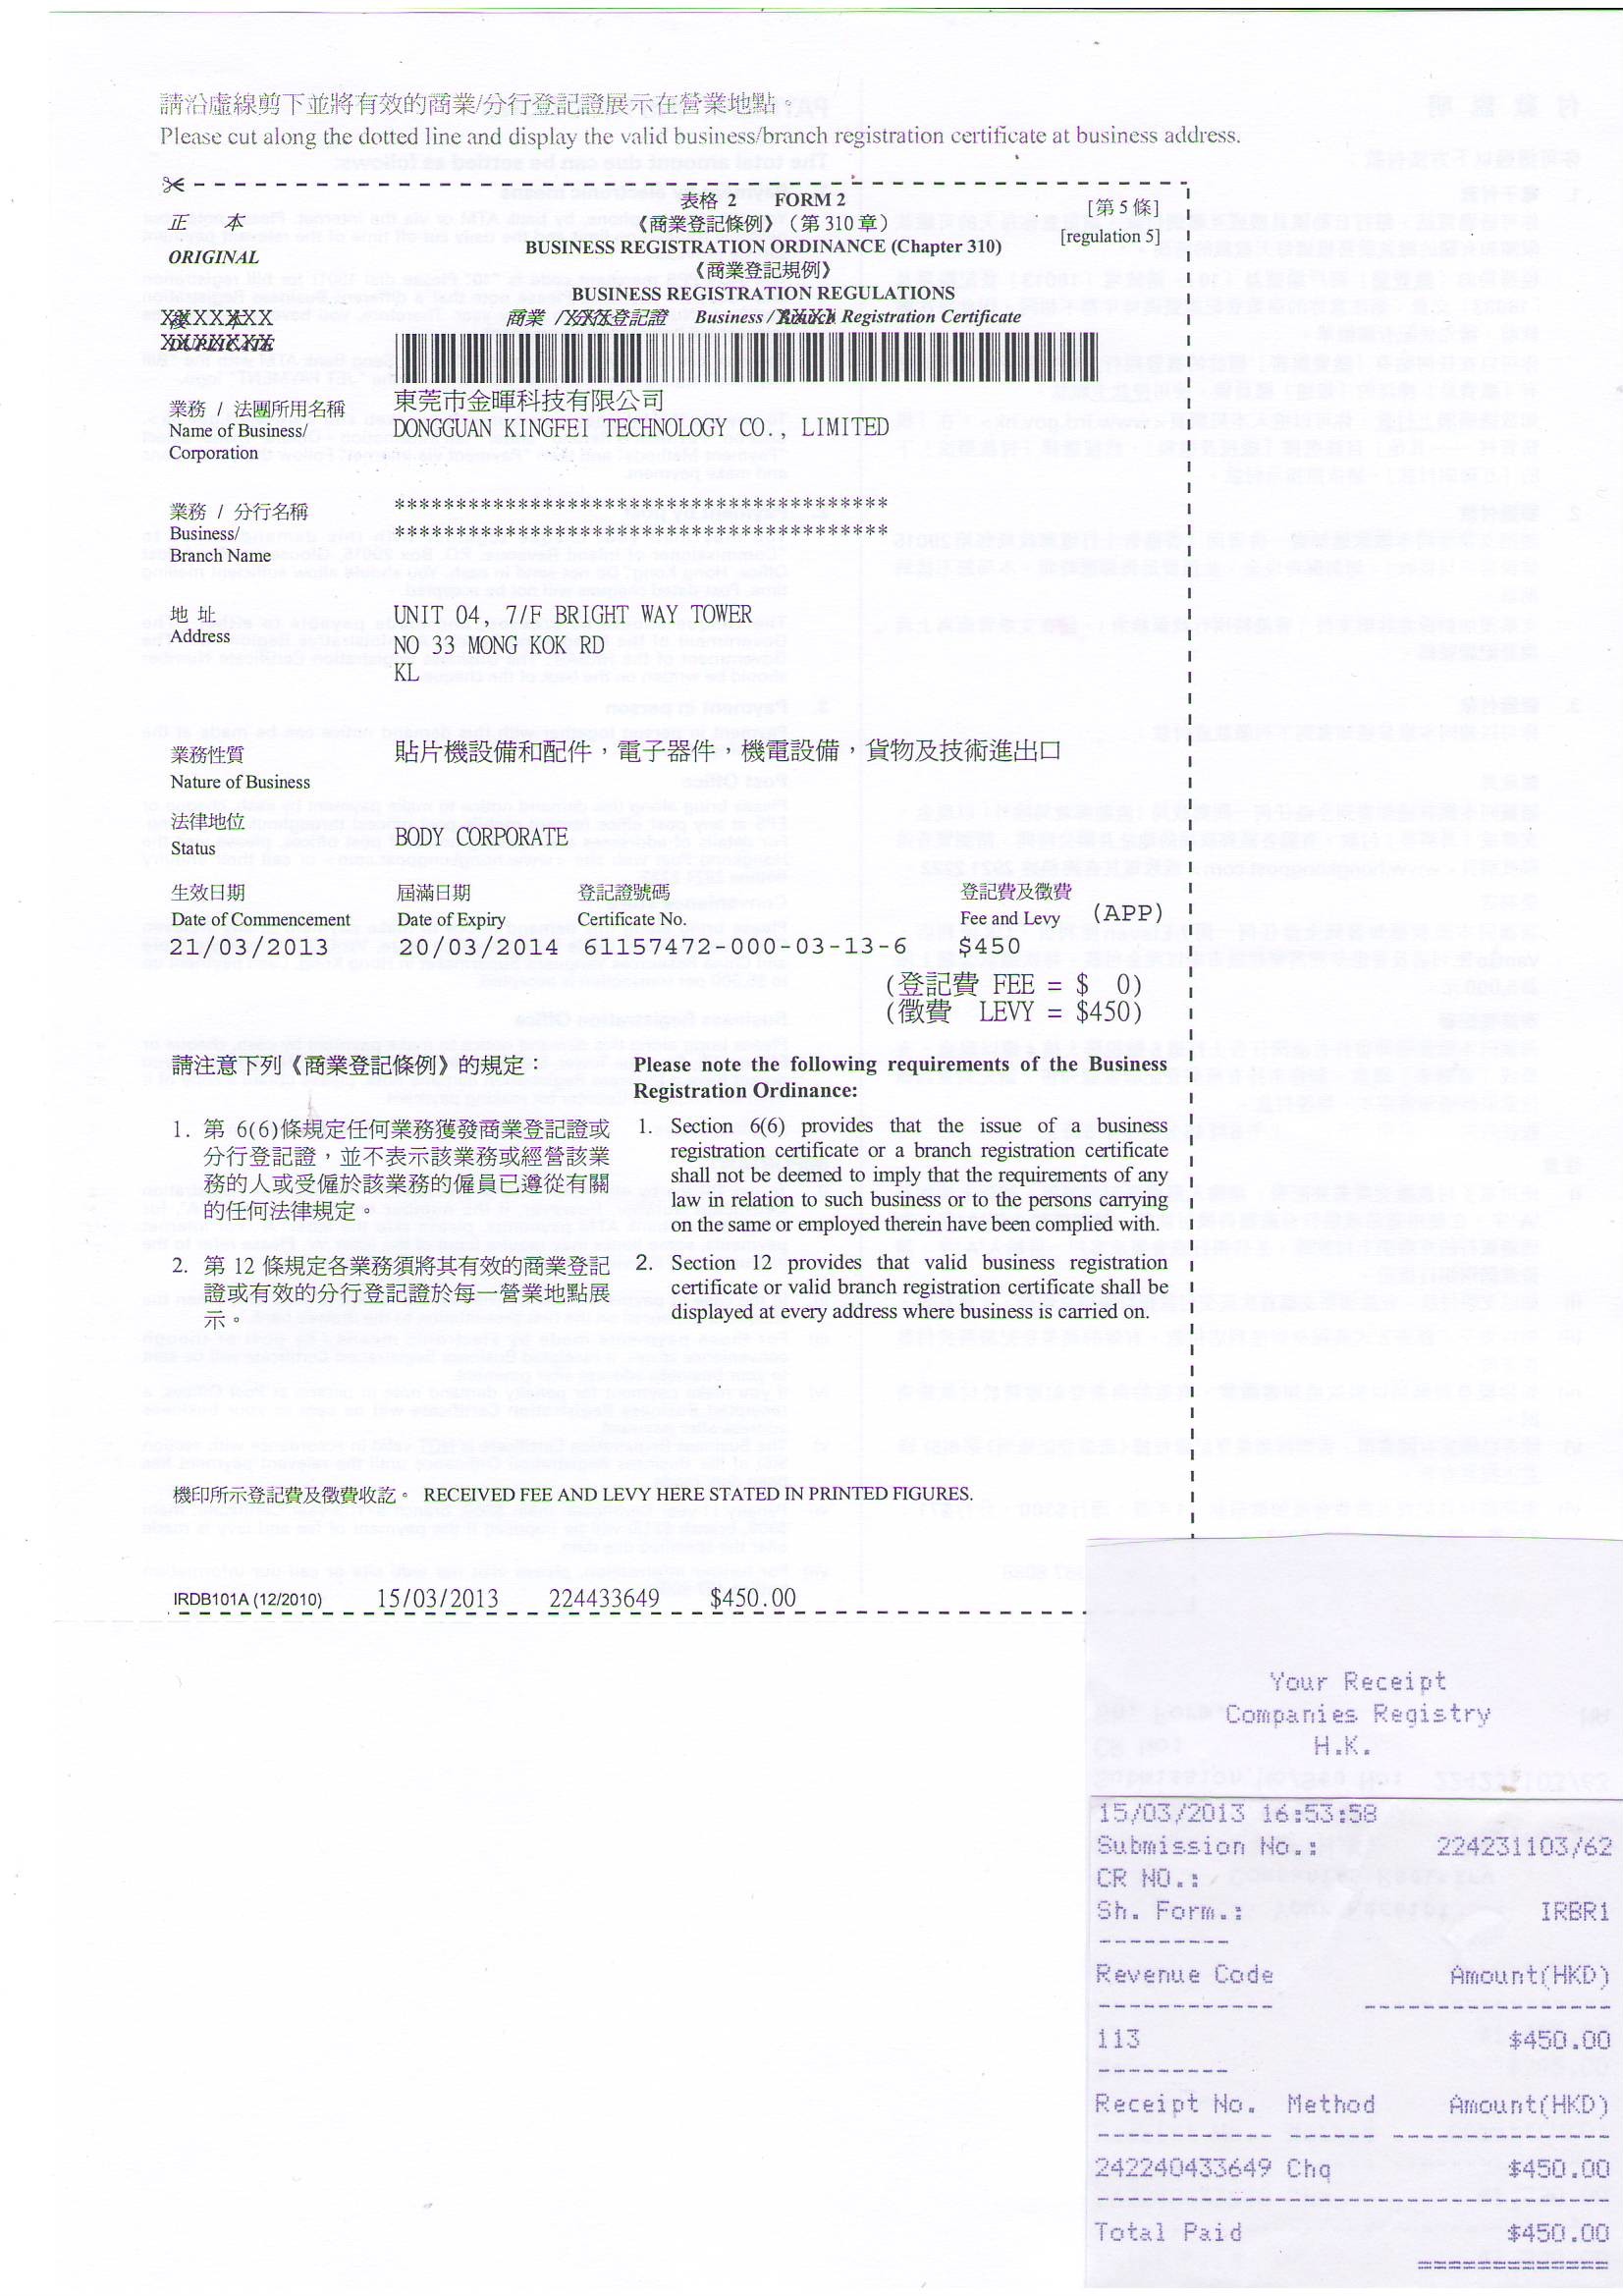 ประเทศจีน Dongguan Kingfei Technology Co.,Limited รับรอง